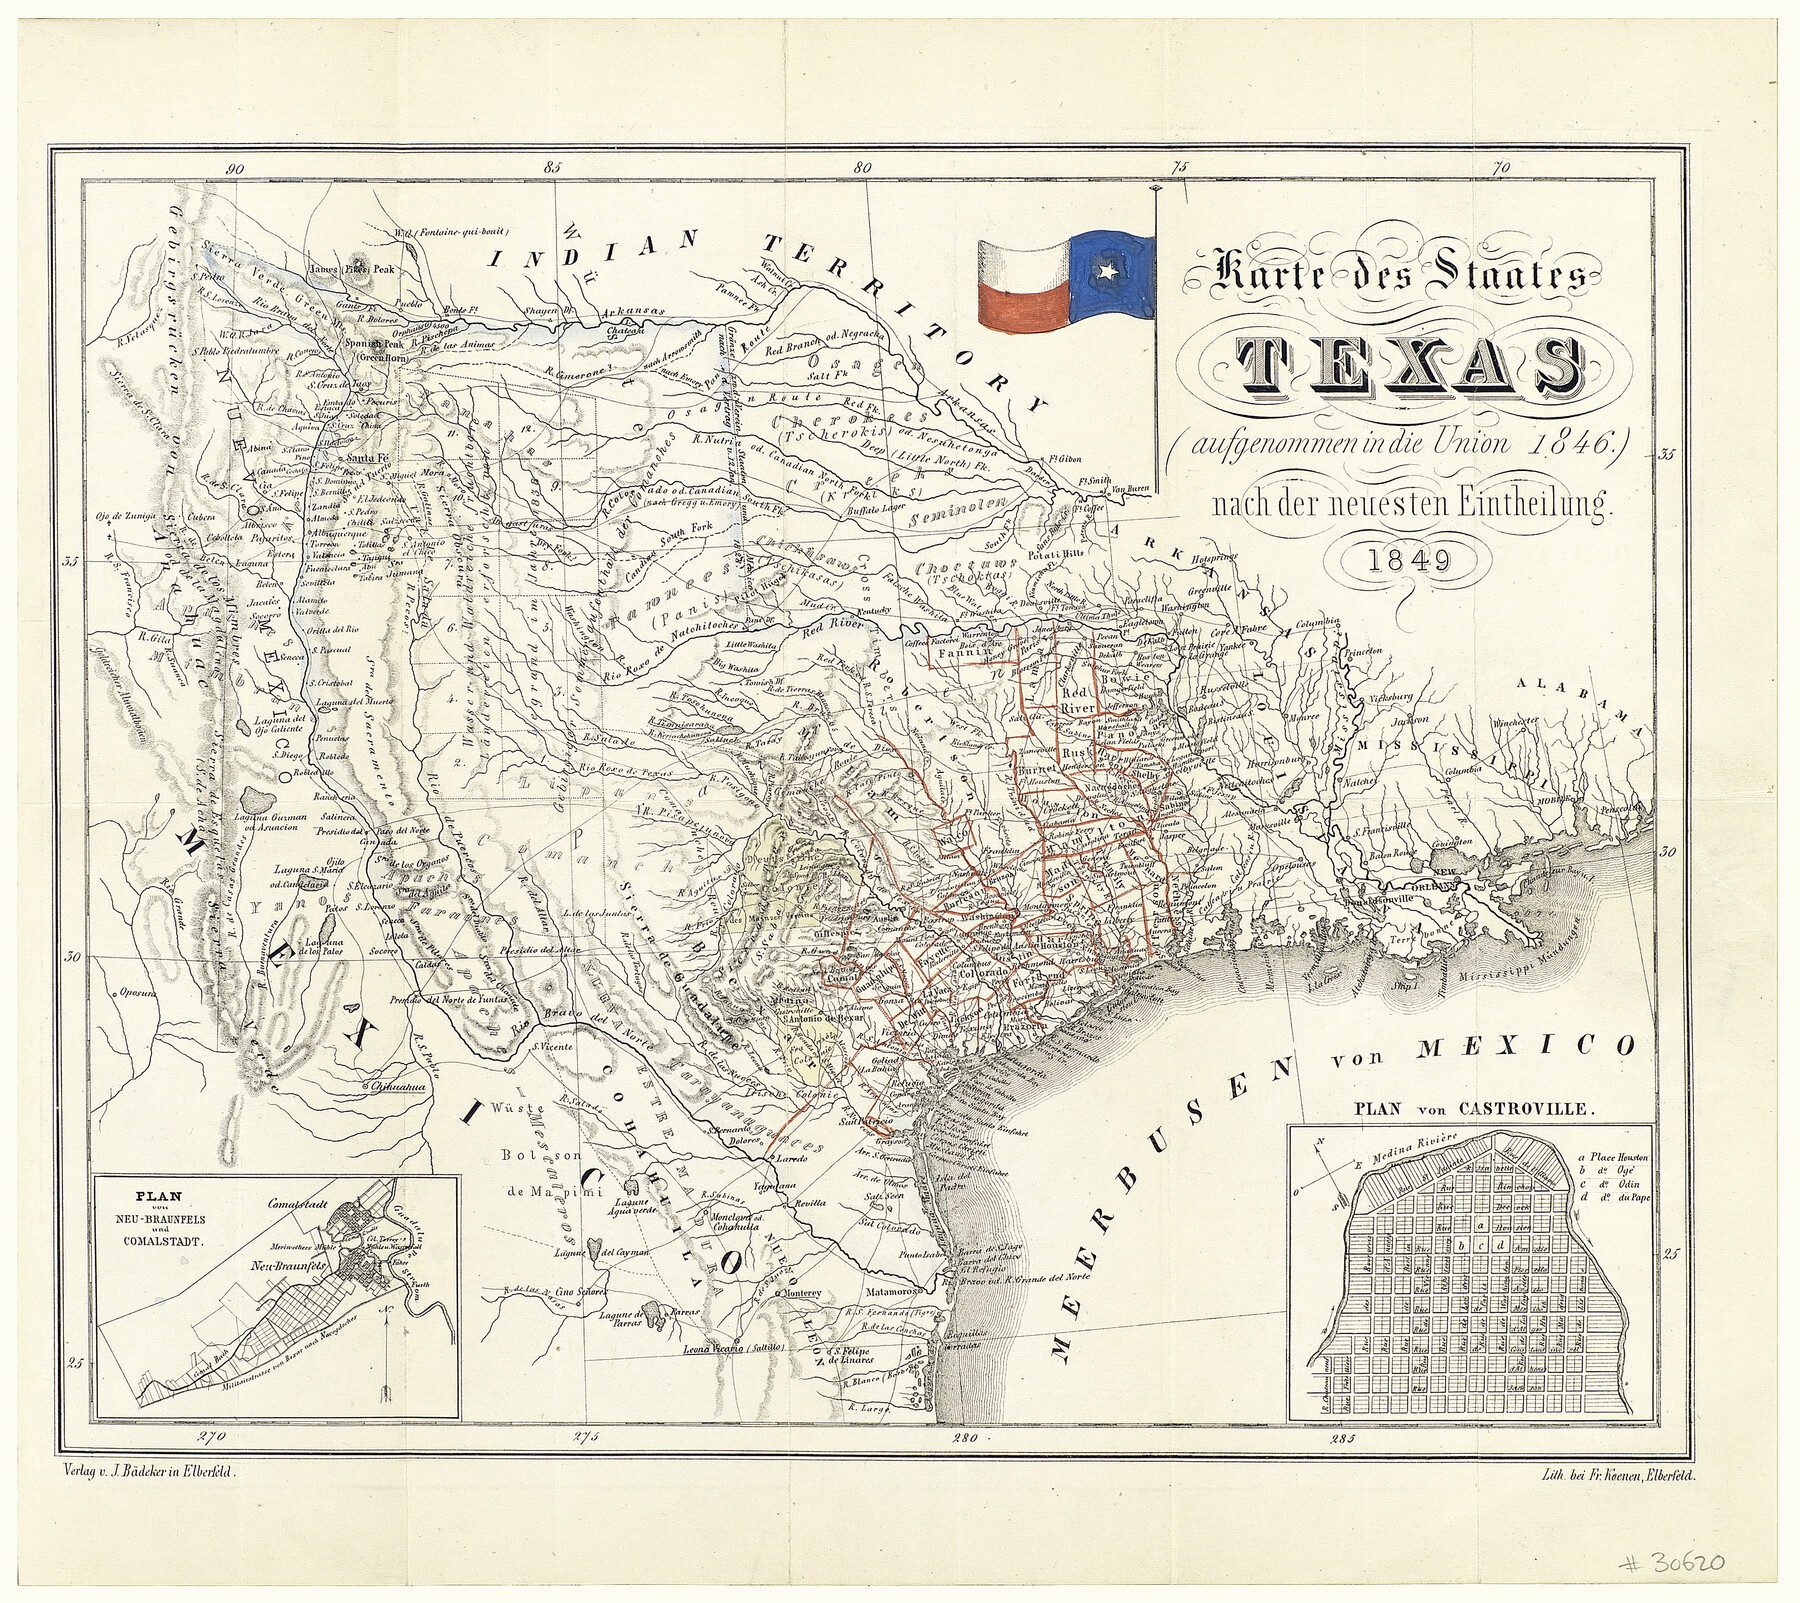 93880, Karte des Staates Texas (aufgenommen in die Union 1846) nach der neuesten Eintheilung, Holcomb Digital Map Collection